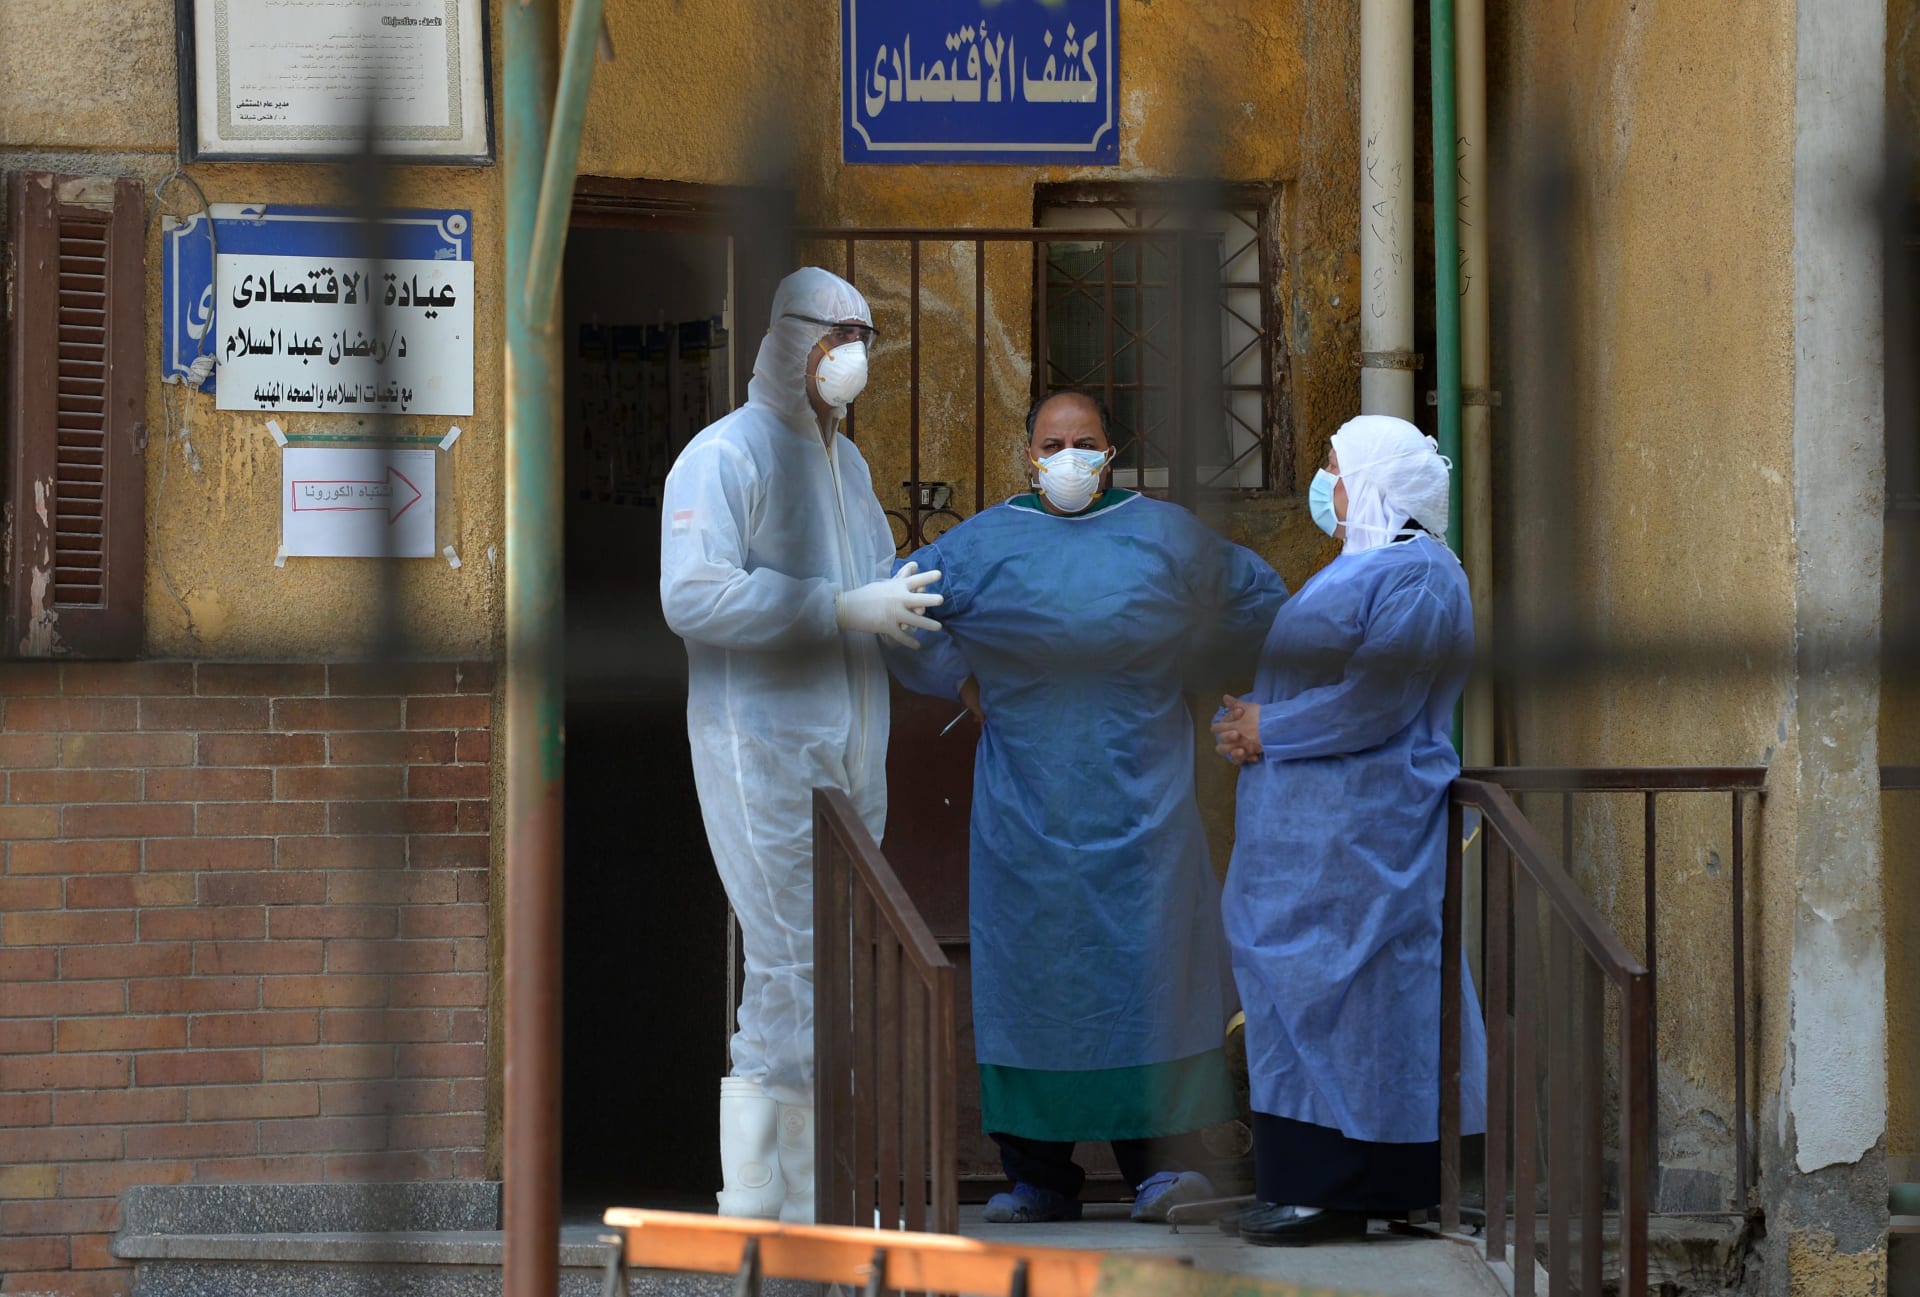 وزير مصري يتنبأ بأعداد إصابات كورونا.. وموعد انحسار الوباء في البلاد